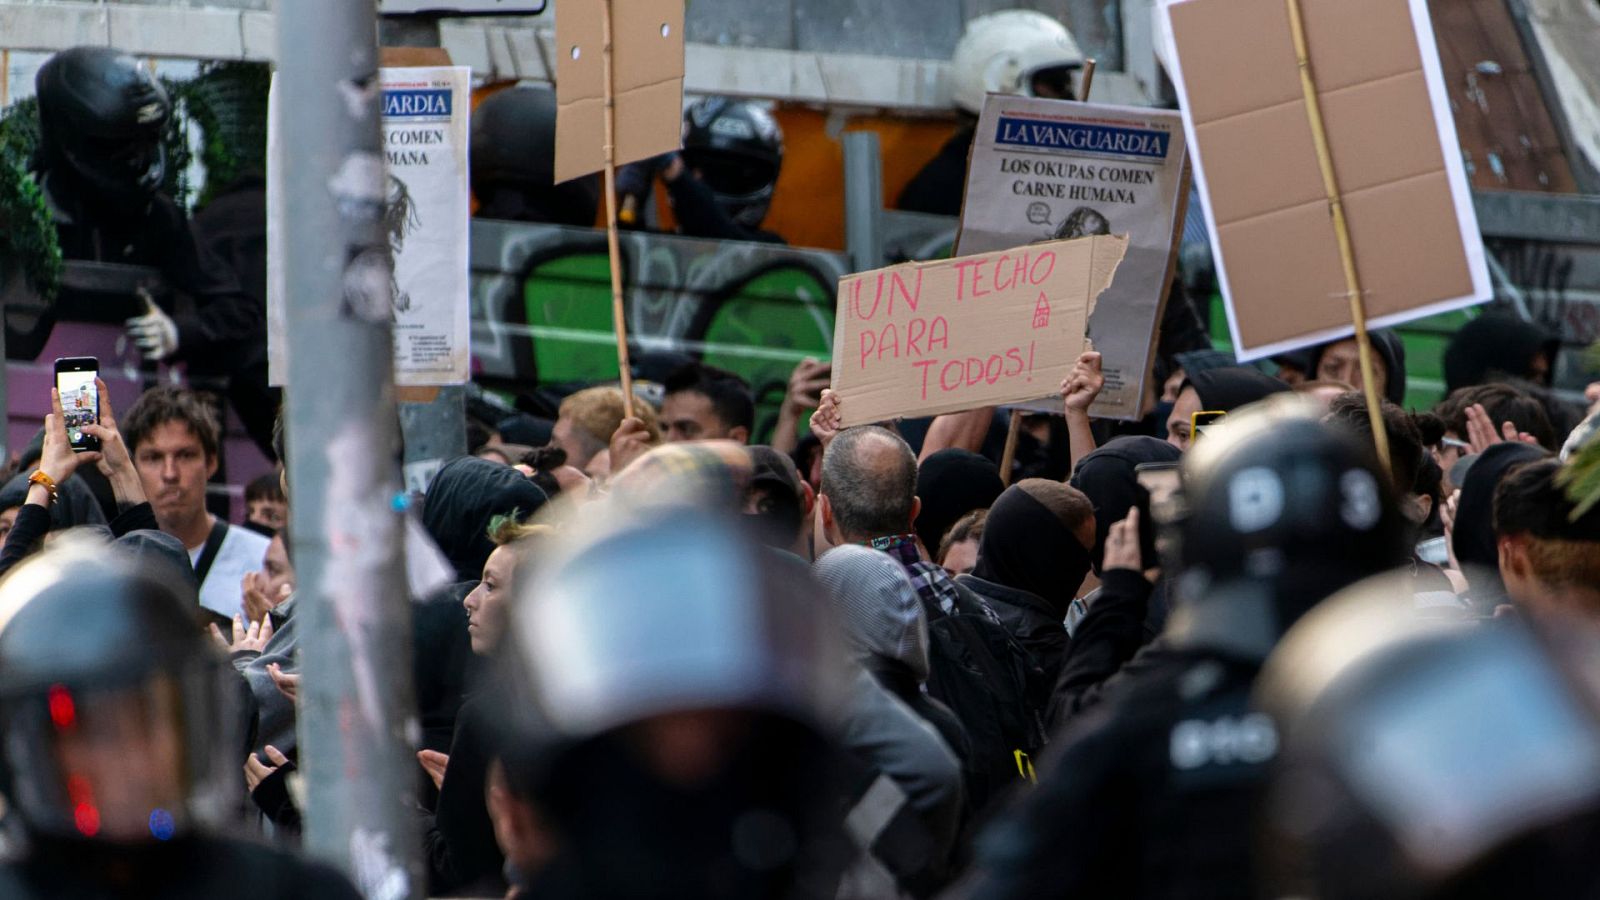 Tensión entre manifestantes a favor de los ocupas y en contra en el barrio Bonanova de Barcelona - Ver ahora